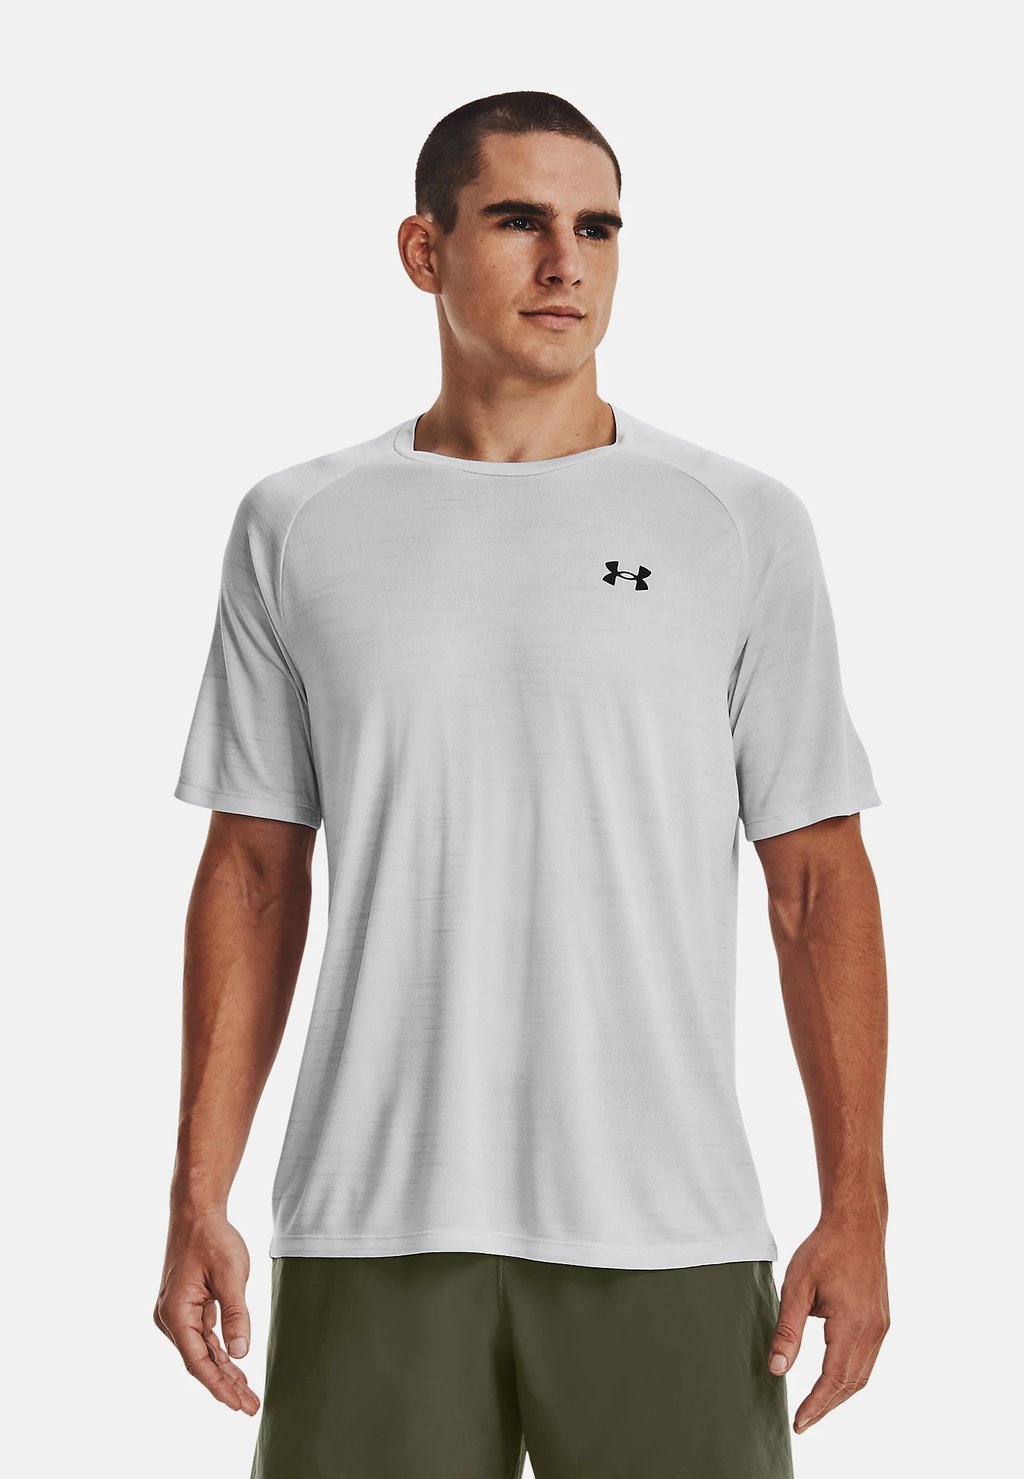 Спортивная футболка TIGER TECH Under Armour, гало-серый/черный фотографии